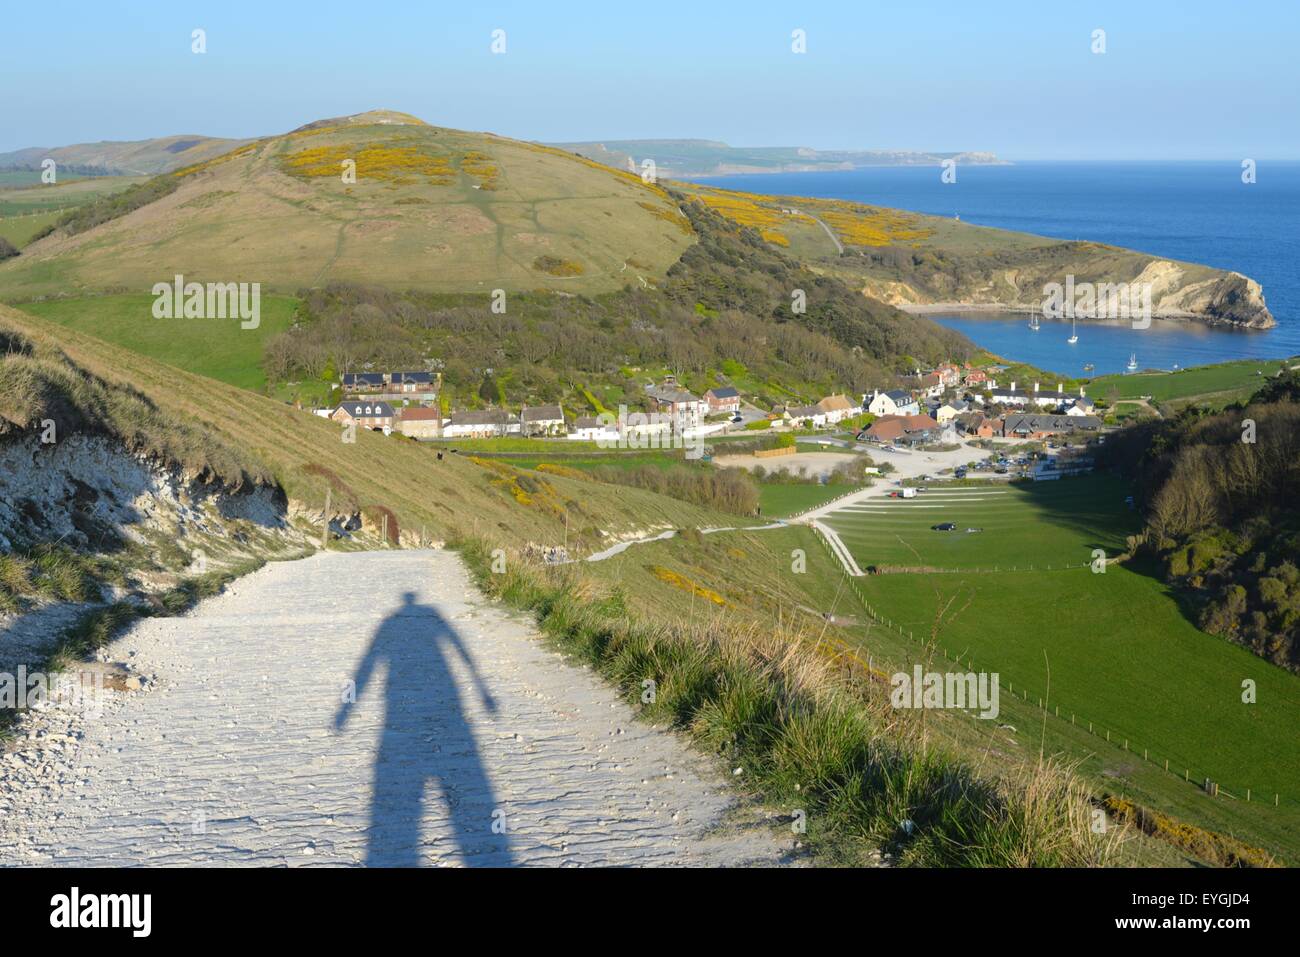 Am späten Nachmittag oder Abend wirft die Sonne einen menschlichen Schatten auf dem Pfad den Hügel hinunter nach Lulworth Cove, Dorset, Großbritannien. Stockfoto